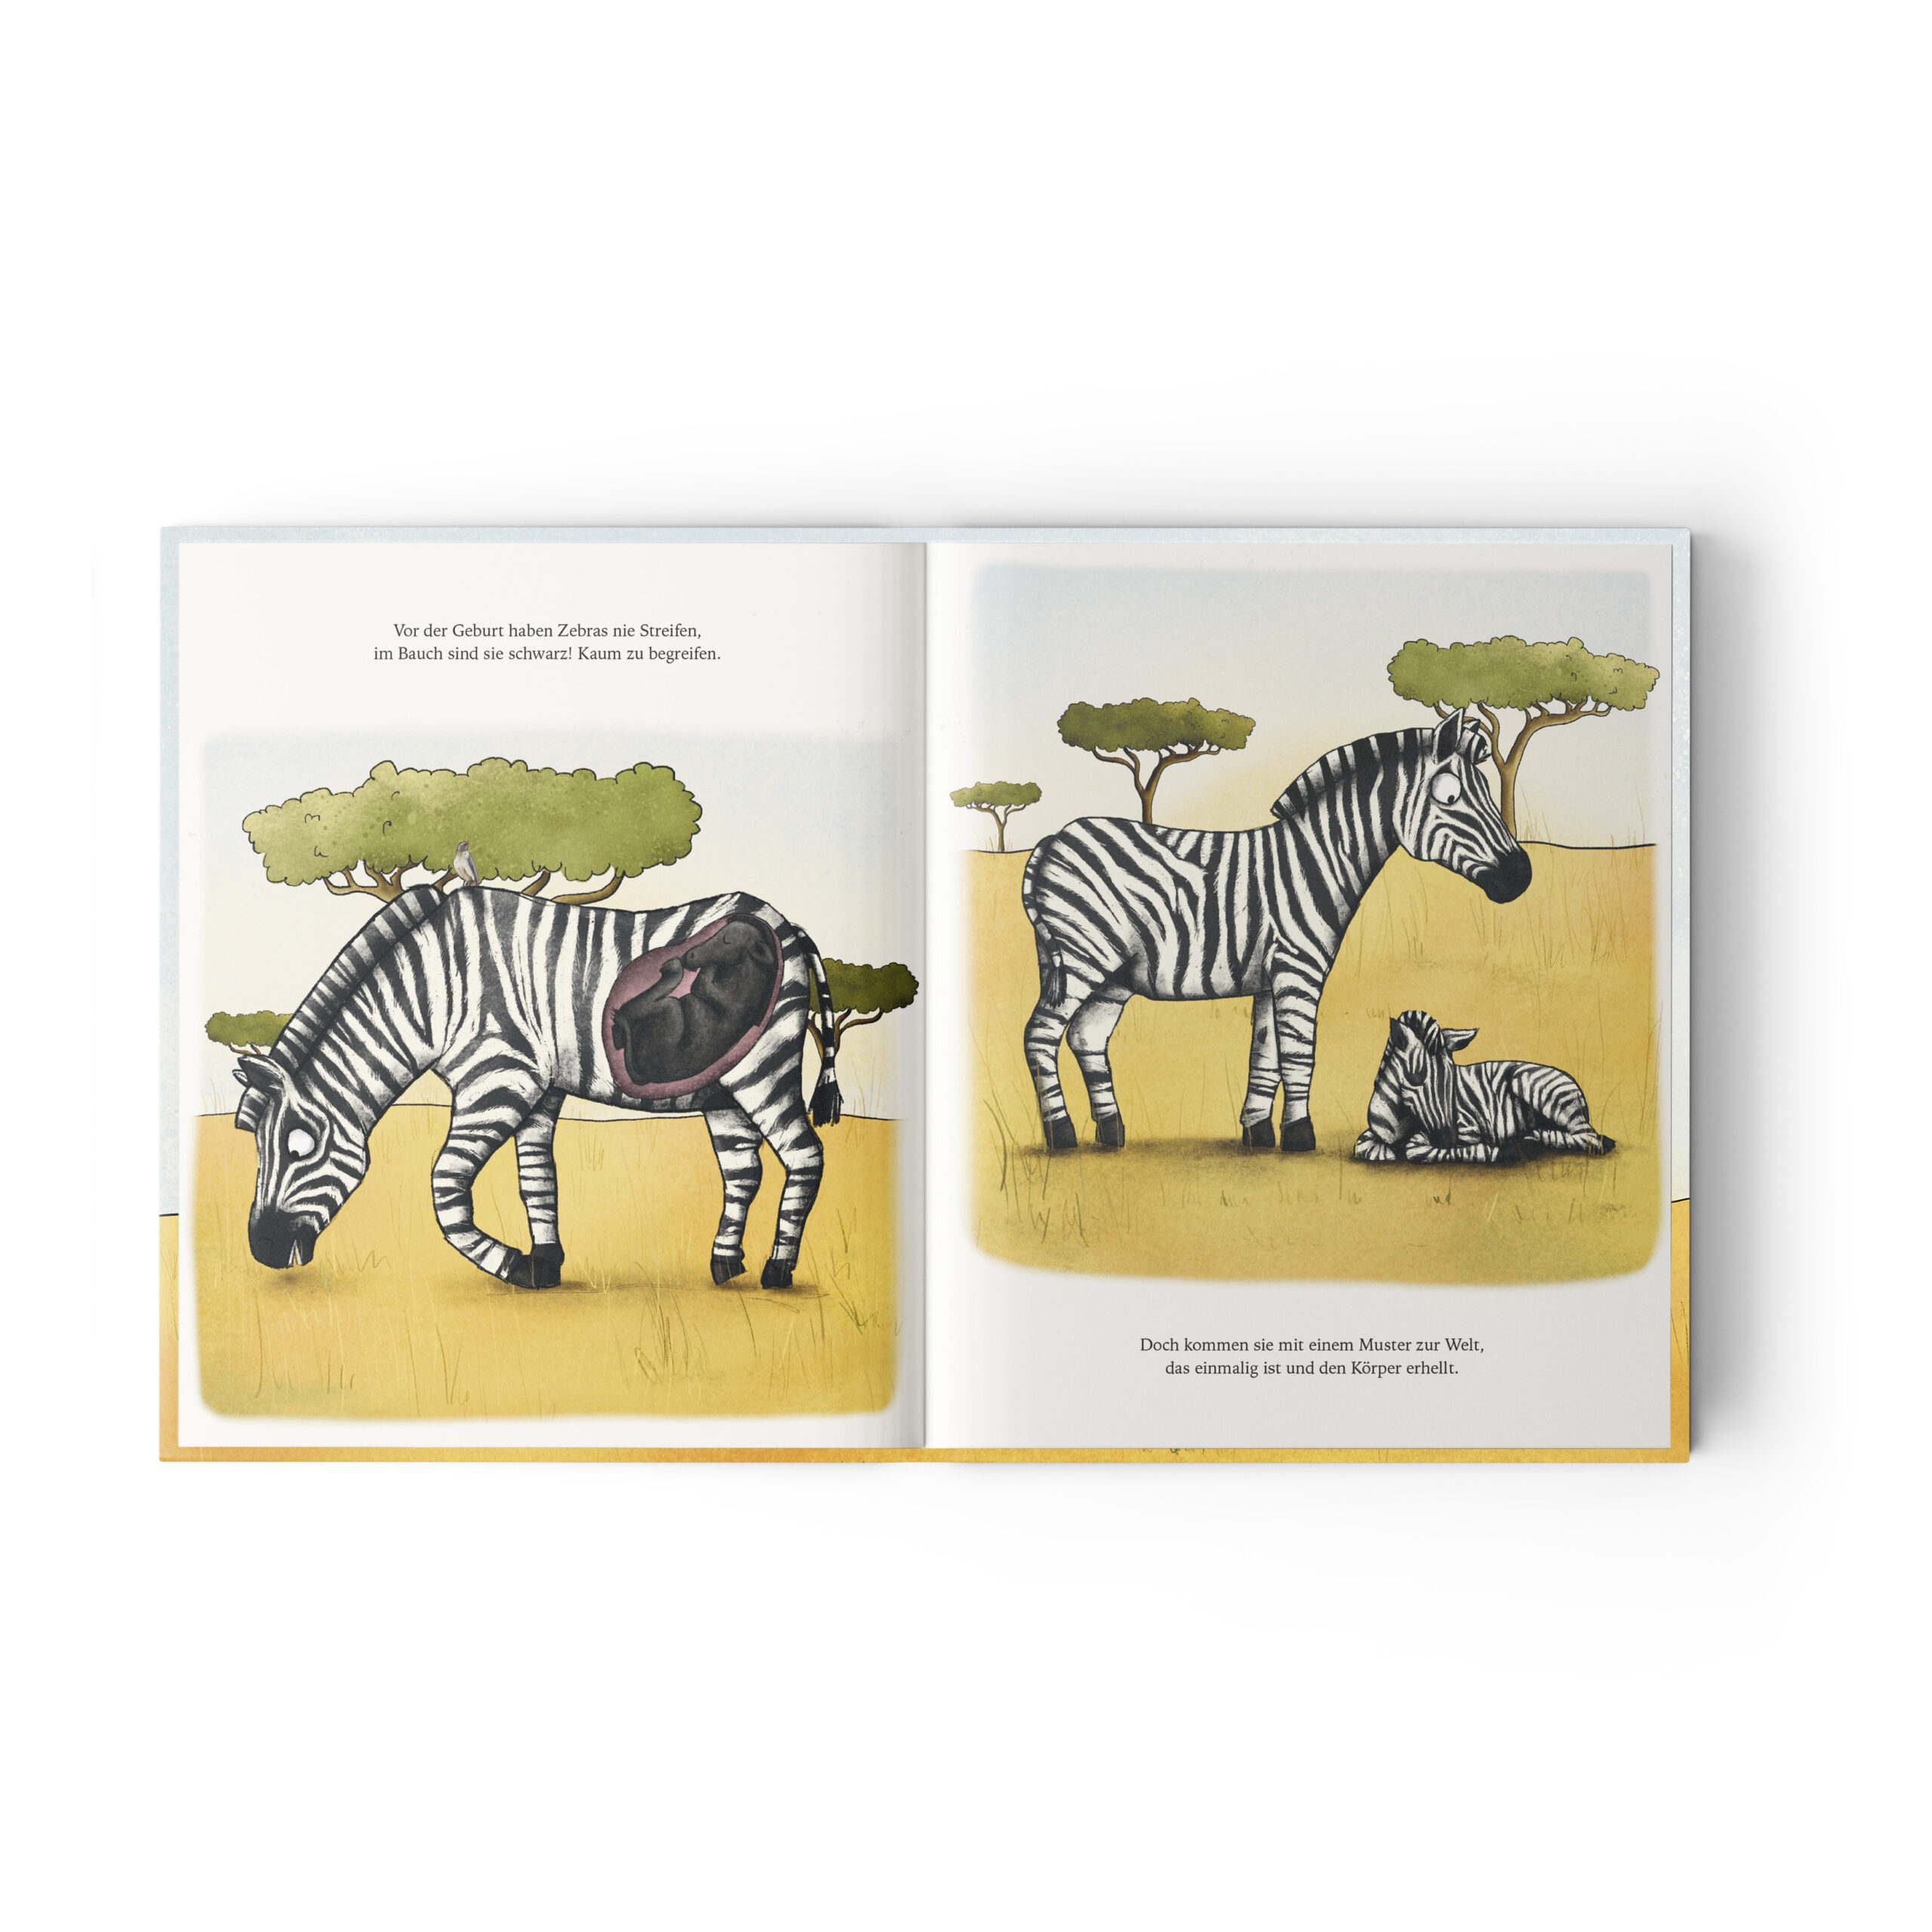 Jupitermond Verlag Kinderbuch 'Noomi, das streifenlose Zebra'